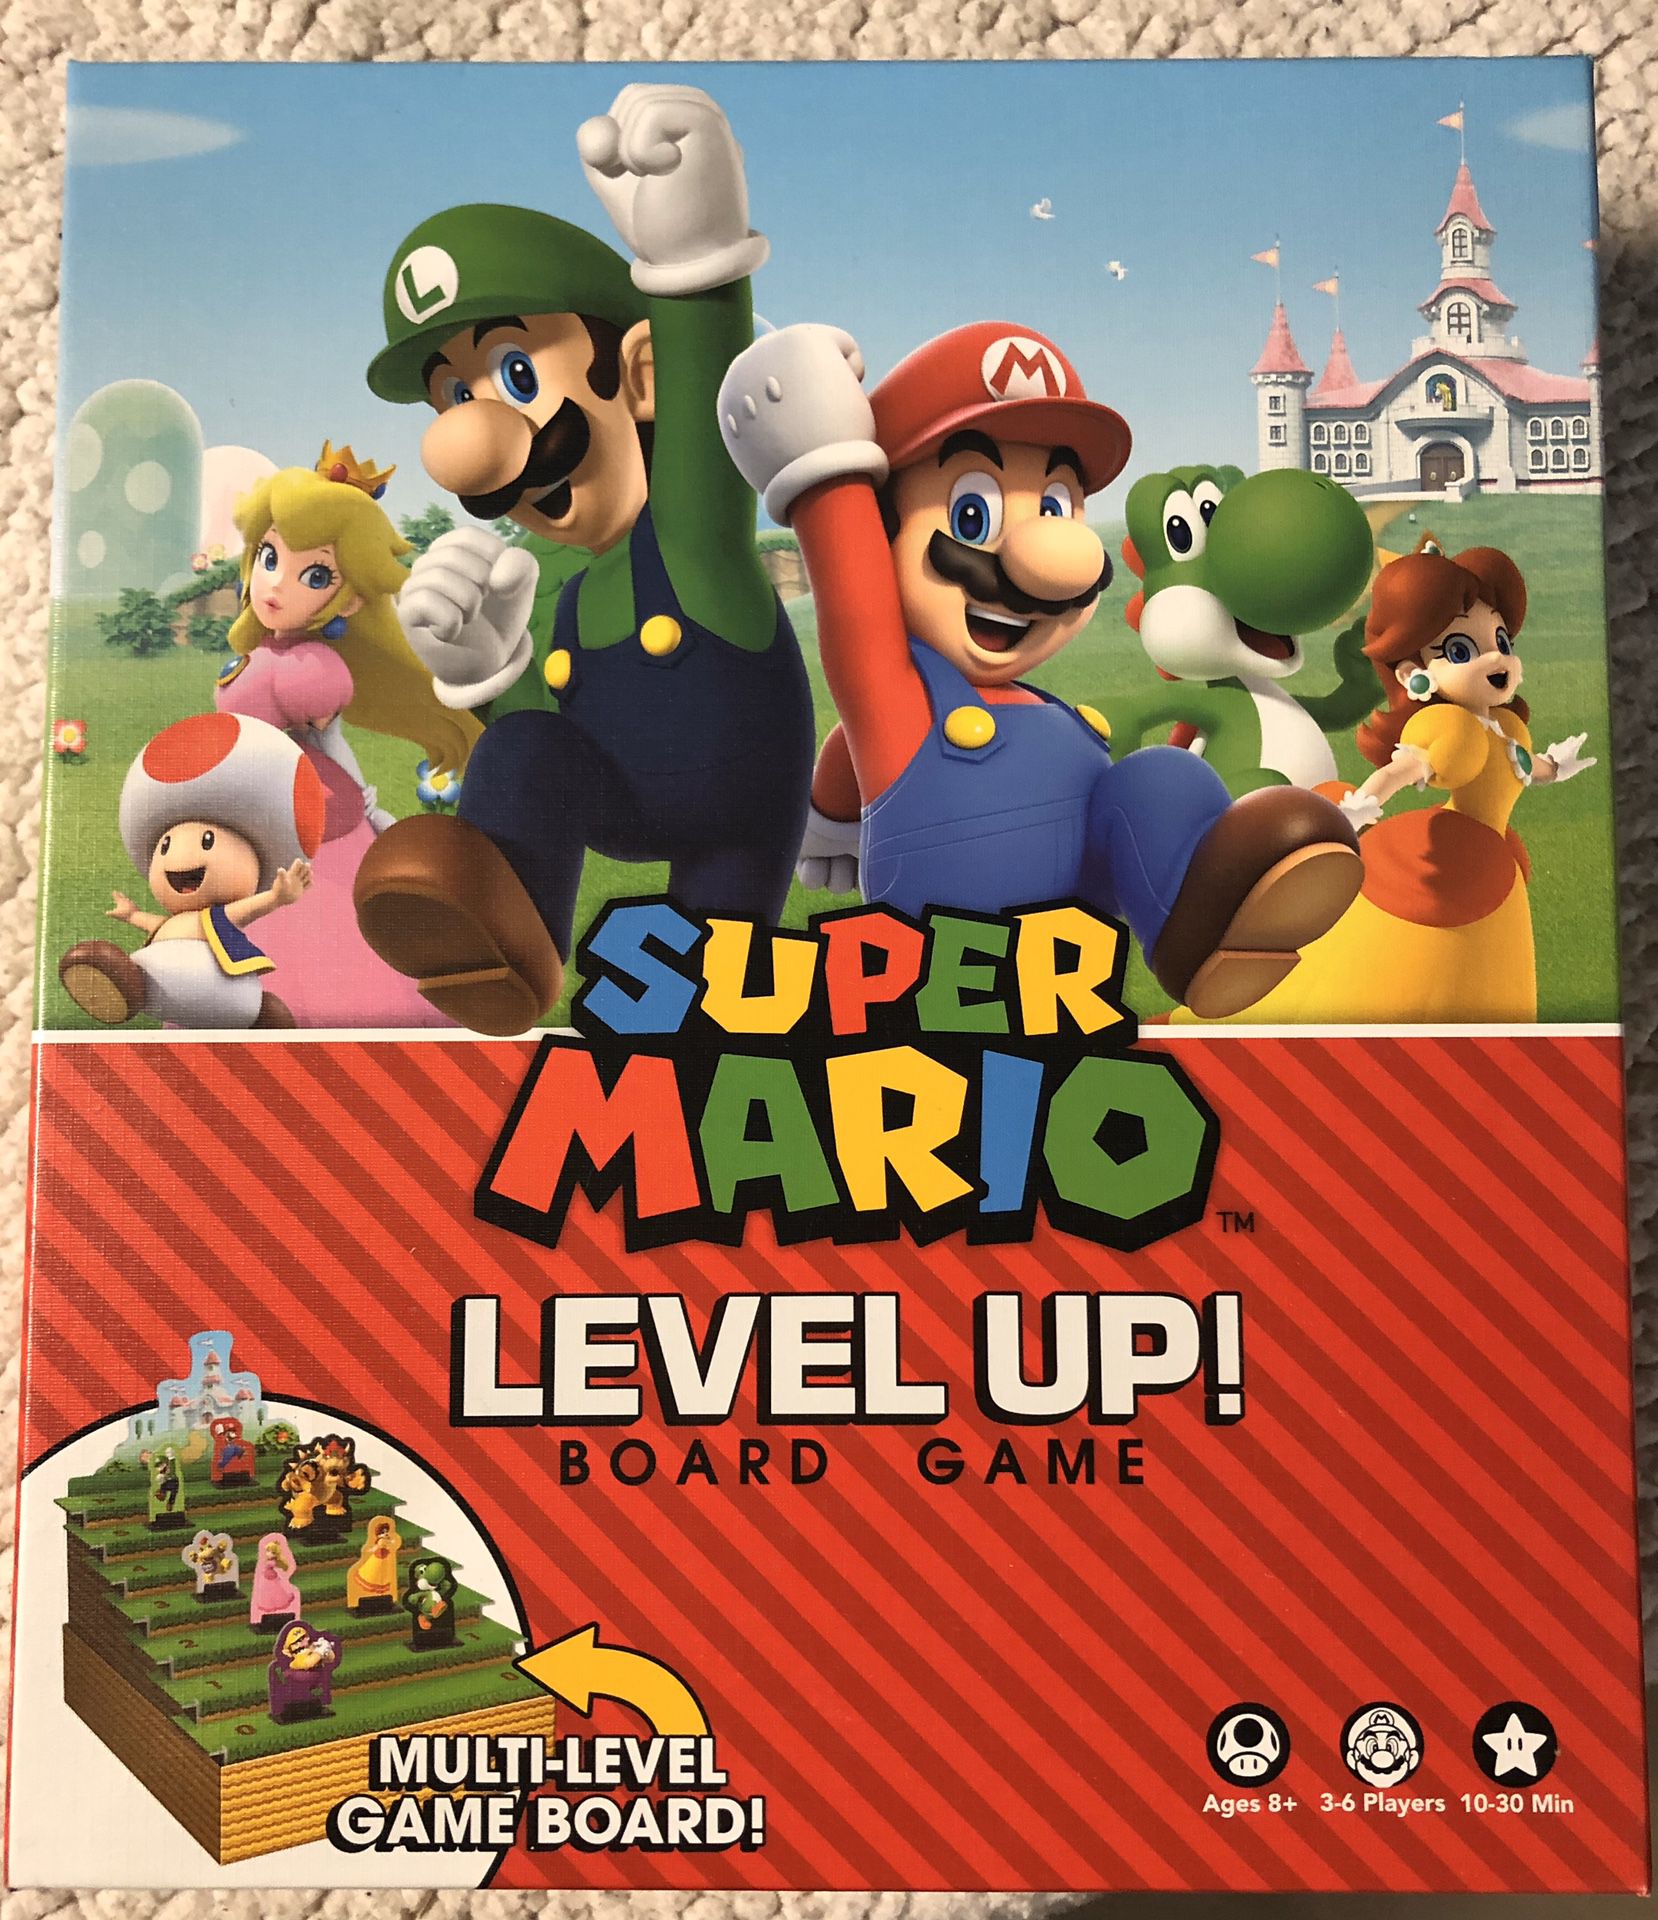 Super Mario board game.